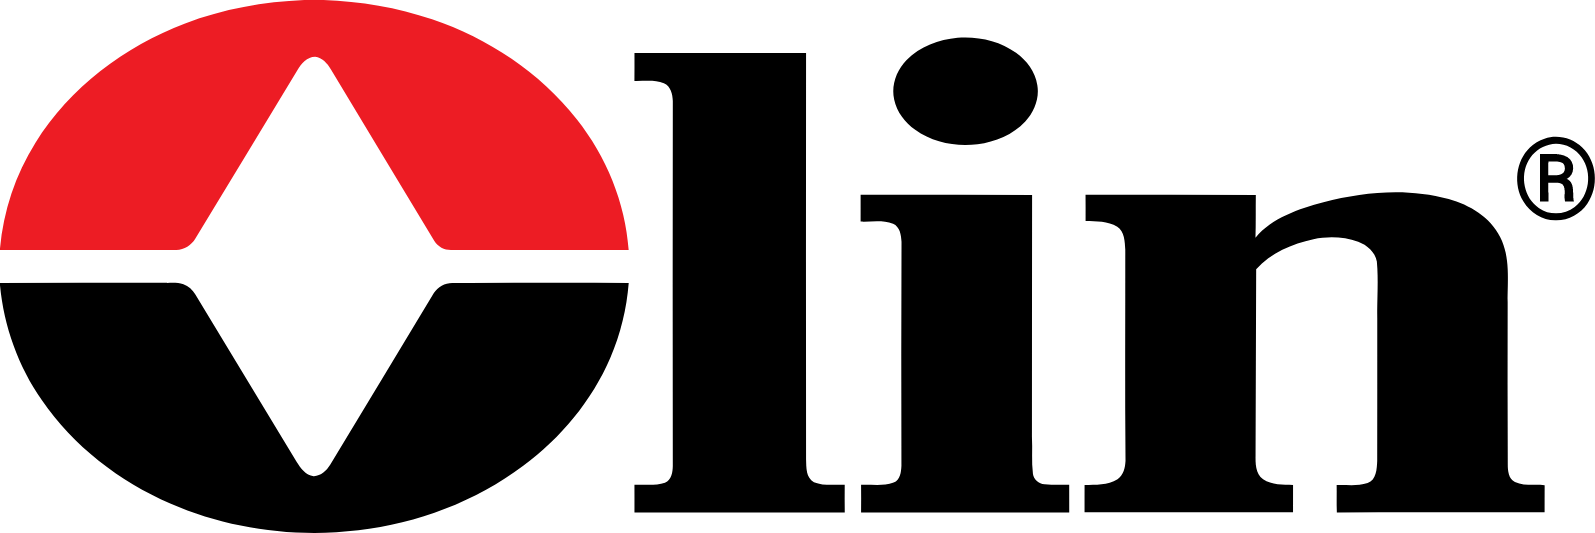 Olin logo large (transparent PNG)